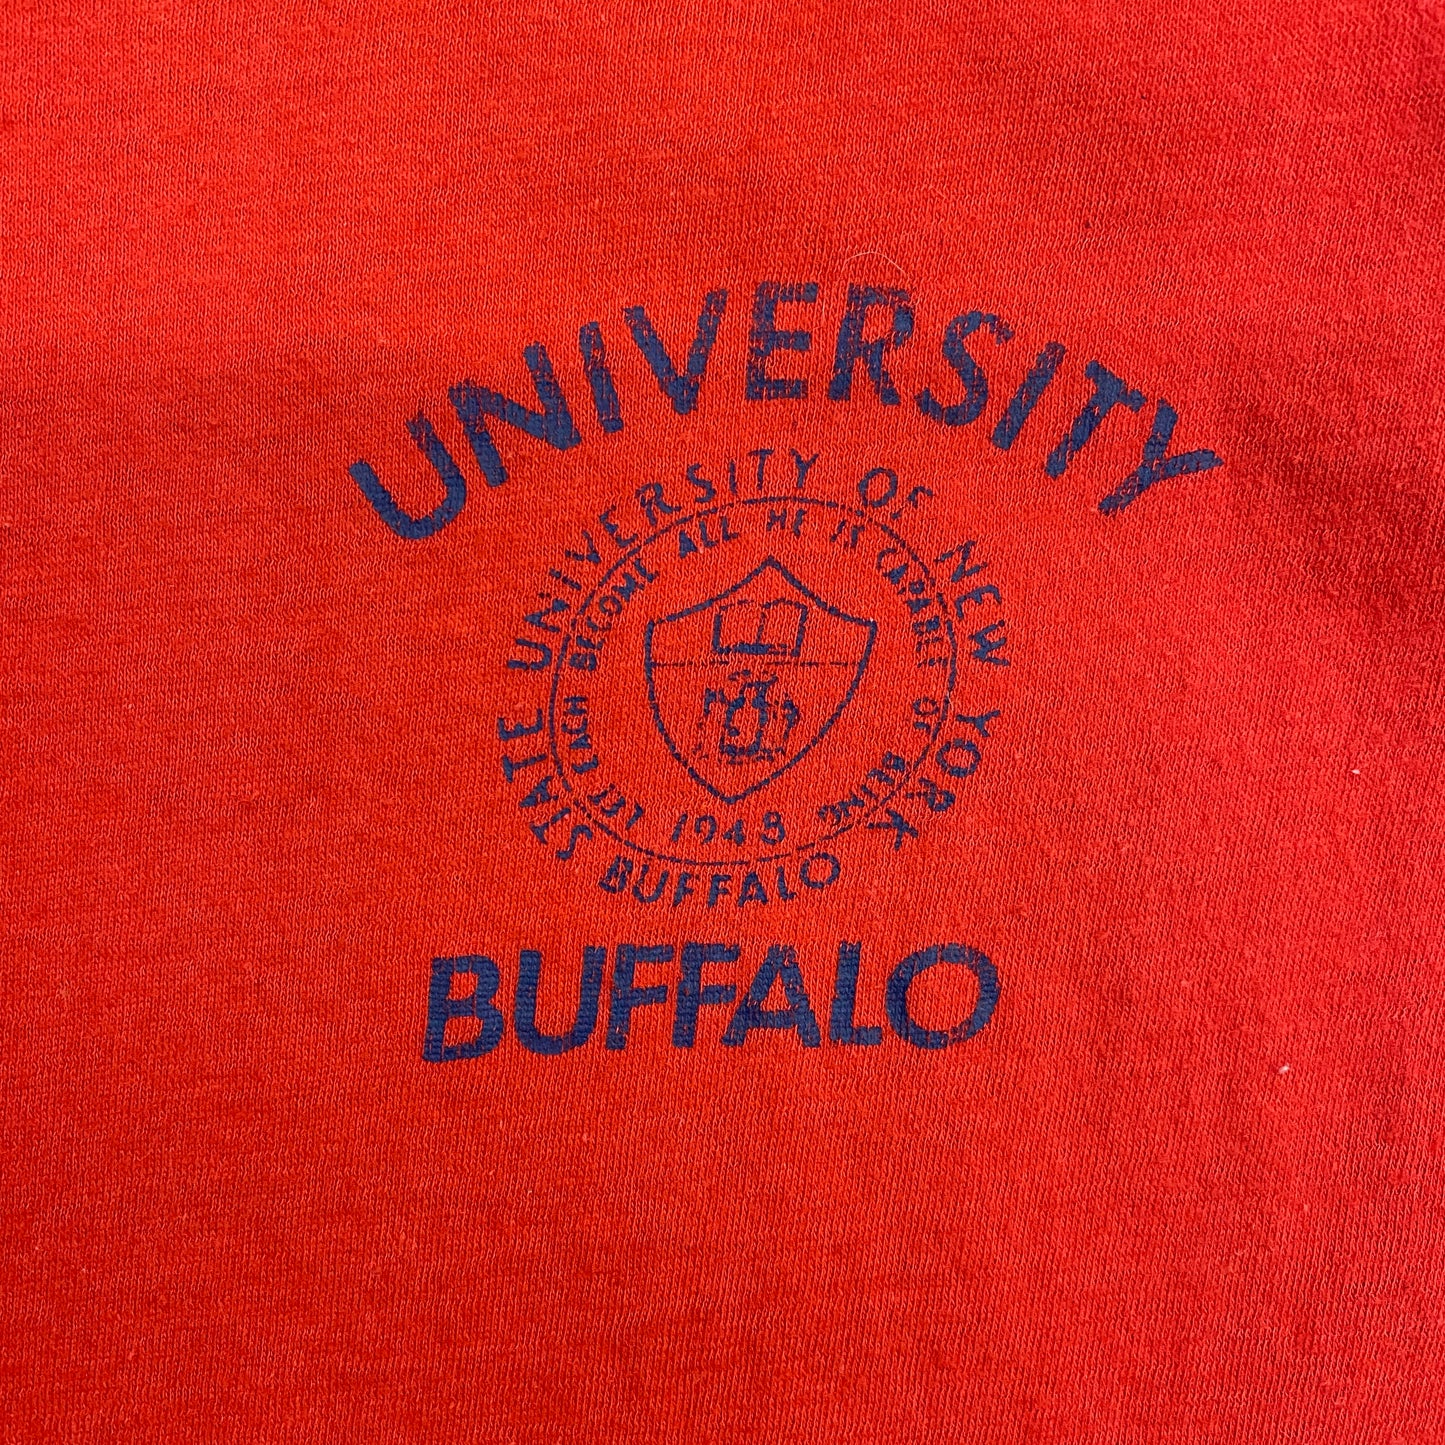 Early 1970s Vintage SUNY Buffalo "University Buffalo" Tee - Size Medium